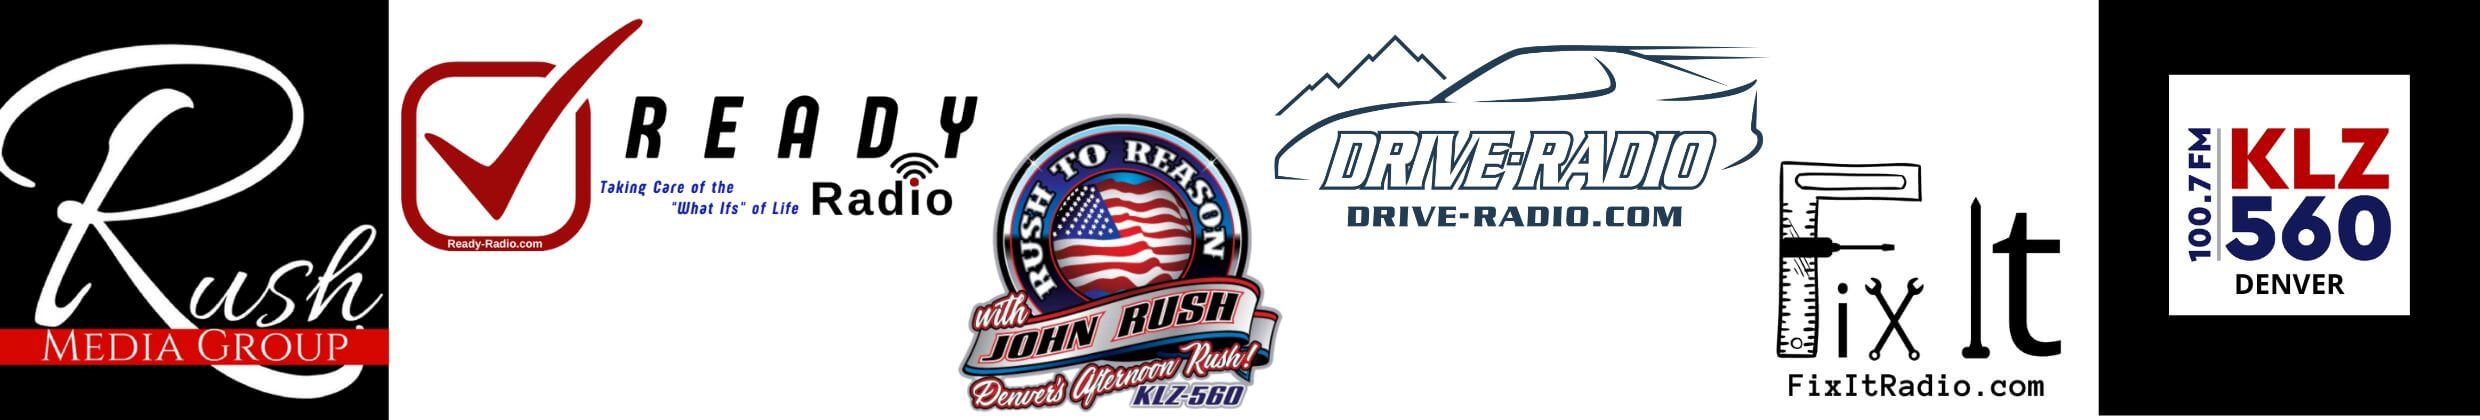 Rush Media Talk Radio Shows from Denver, CO